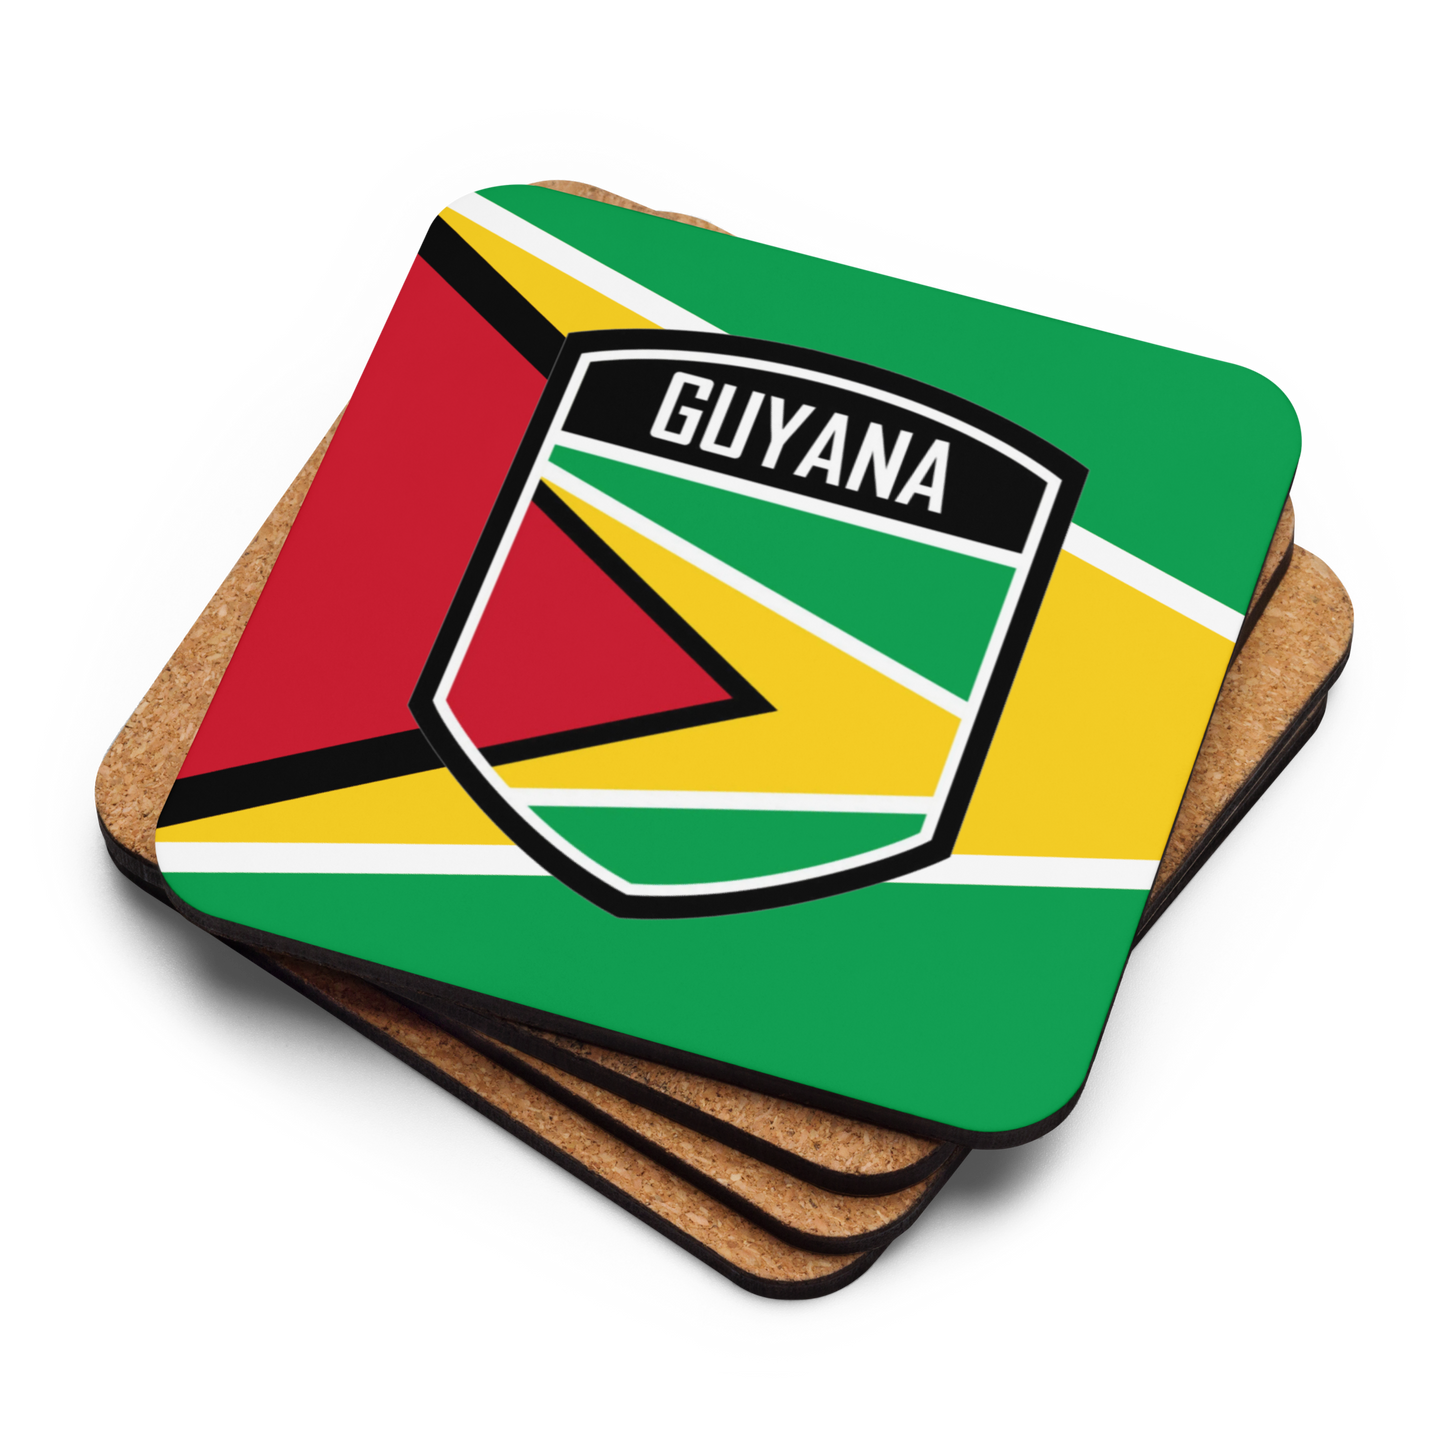 Guyana Cork-back coaster